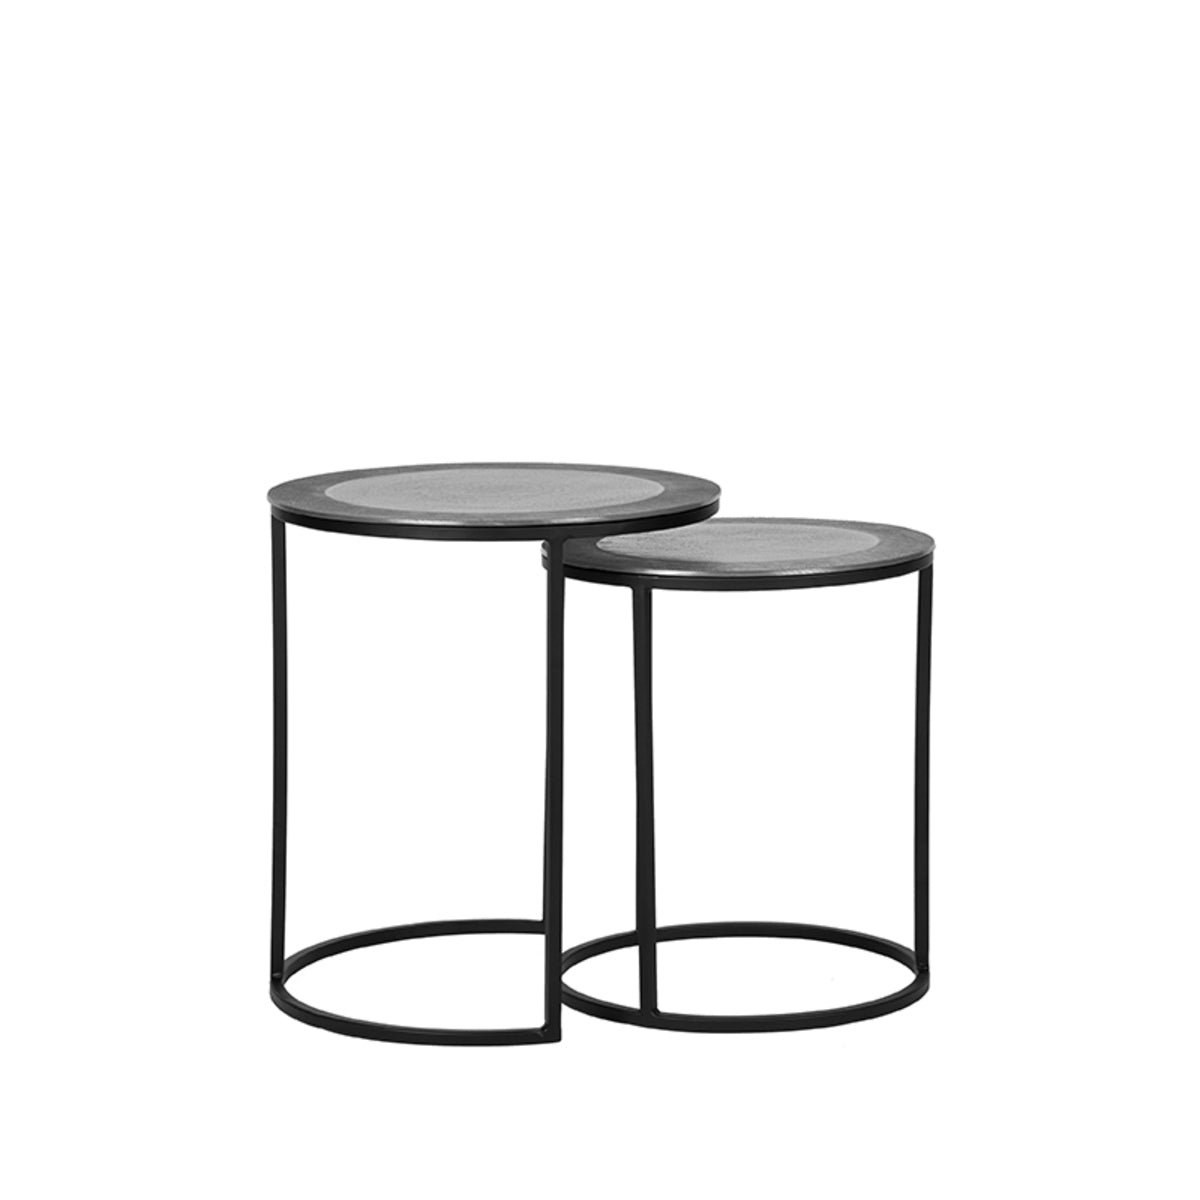 LABEL51 Coffee Table Set Pair - Antique ash - Metal - 40 cm